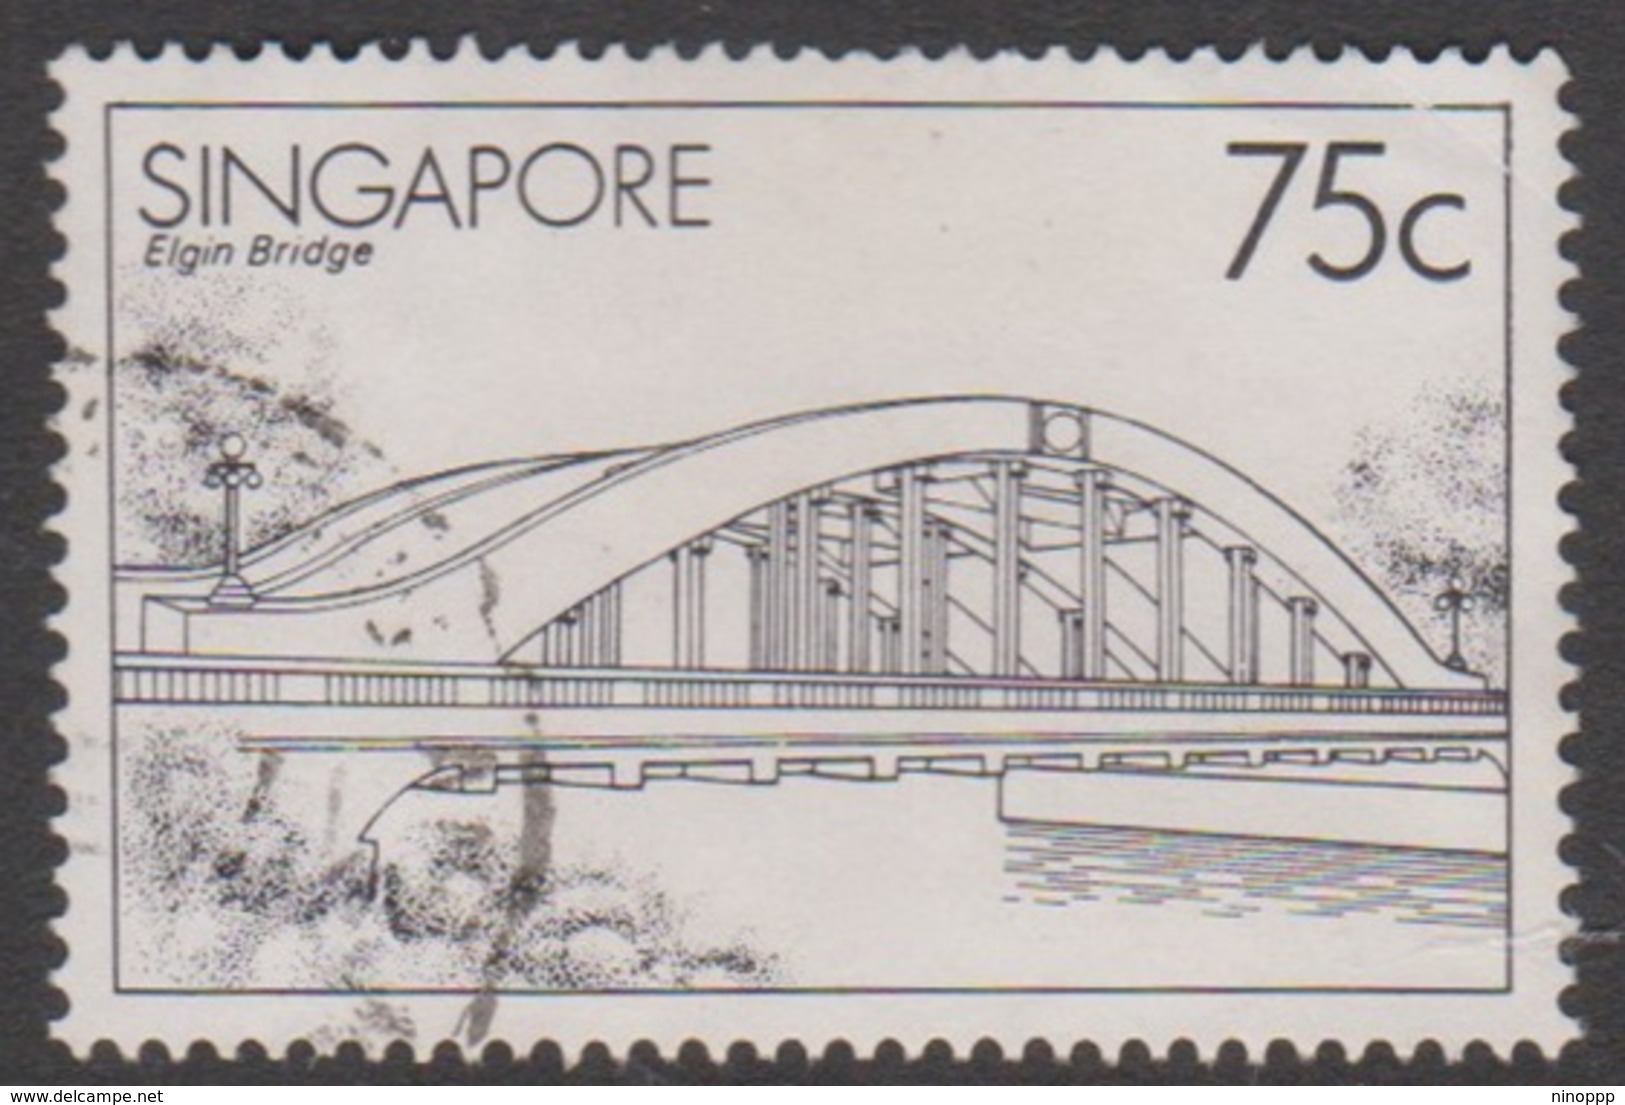 Singapore 493 1985 Bridges 75c Elgin Bridge, Used - Singapore (1959-...)